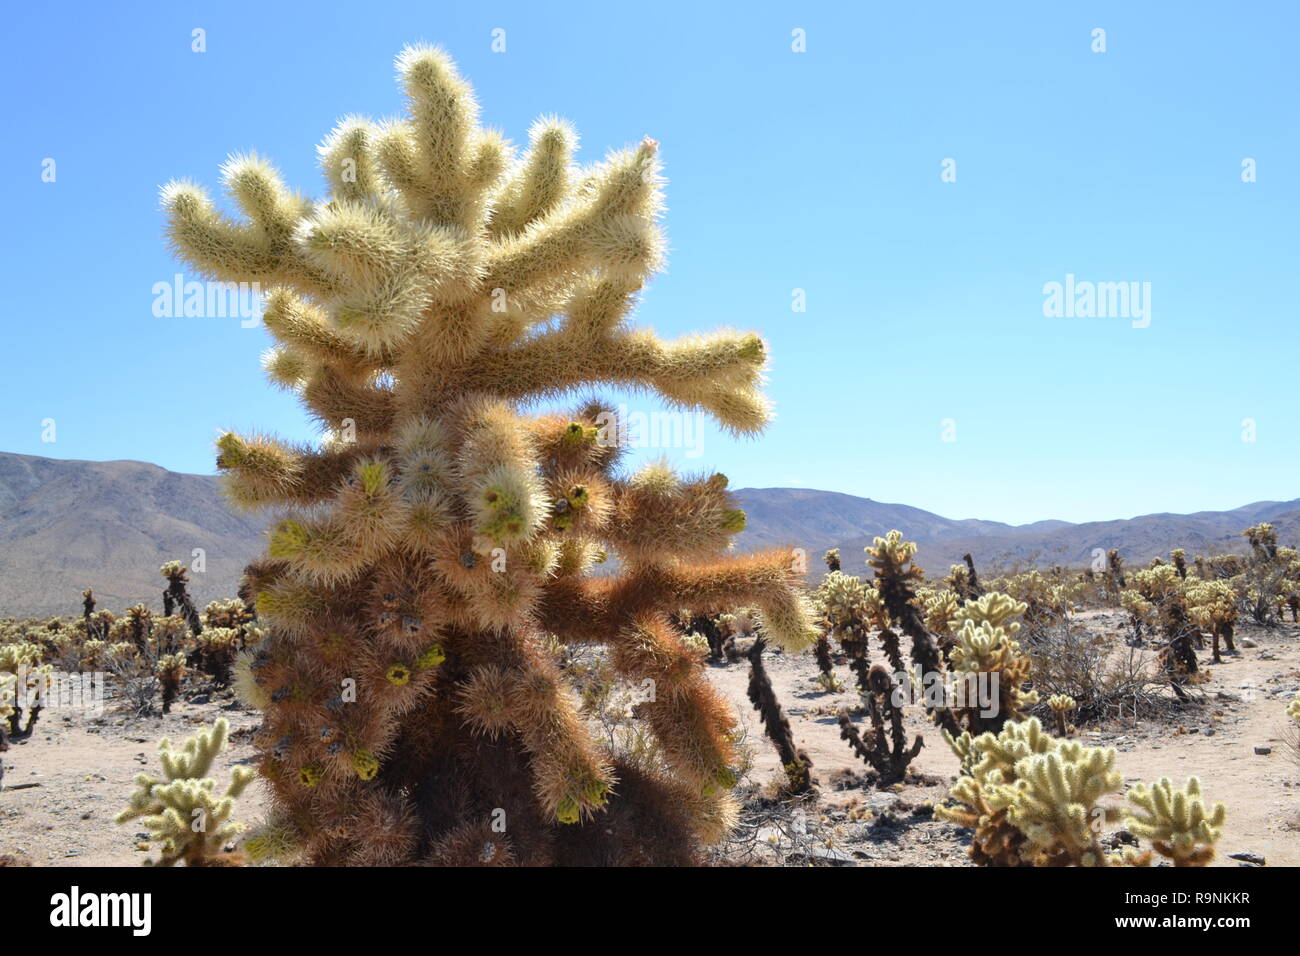 Close-up of a teddy-bear cholla cactus (Cactus Jardin de Joshua Tree National Park, Californie En Californie désert. Hexie montagnes en arrière-plan Banque D'Images